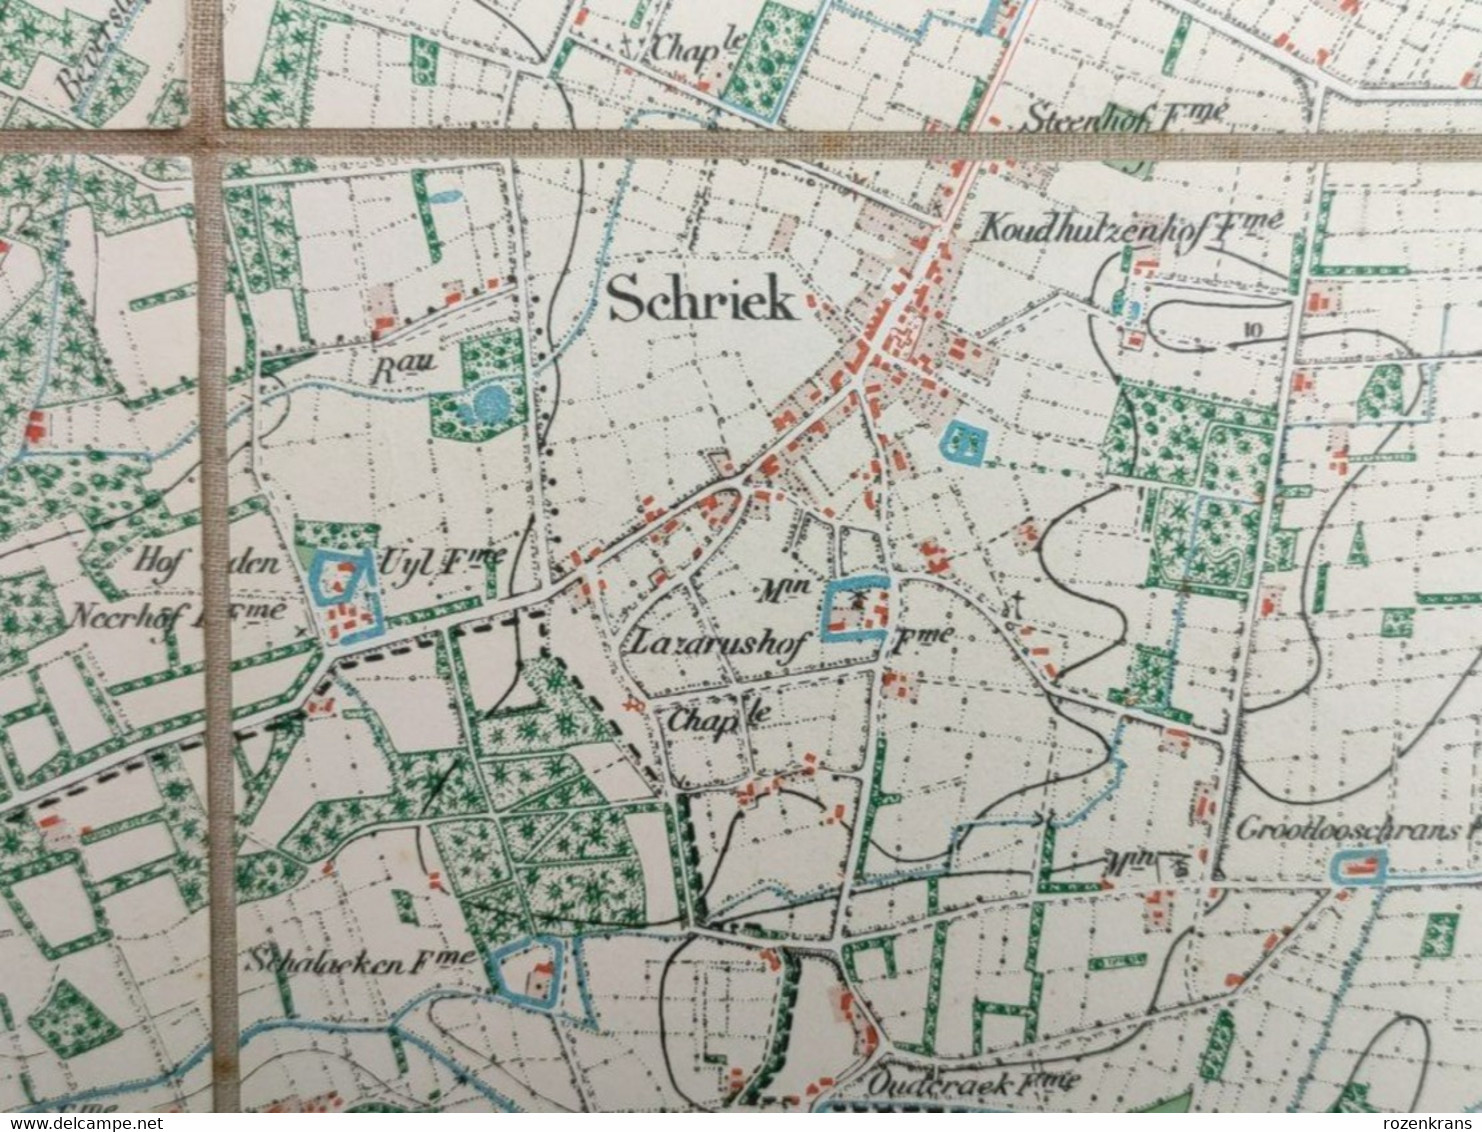 TOPSTUK Oude Topografische & Militaire Kaart 1869 STAFKAART Heist Op Den Berg Schriek Beersel Beerselberg Hallaar Werft - Topographical Maps